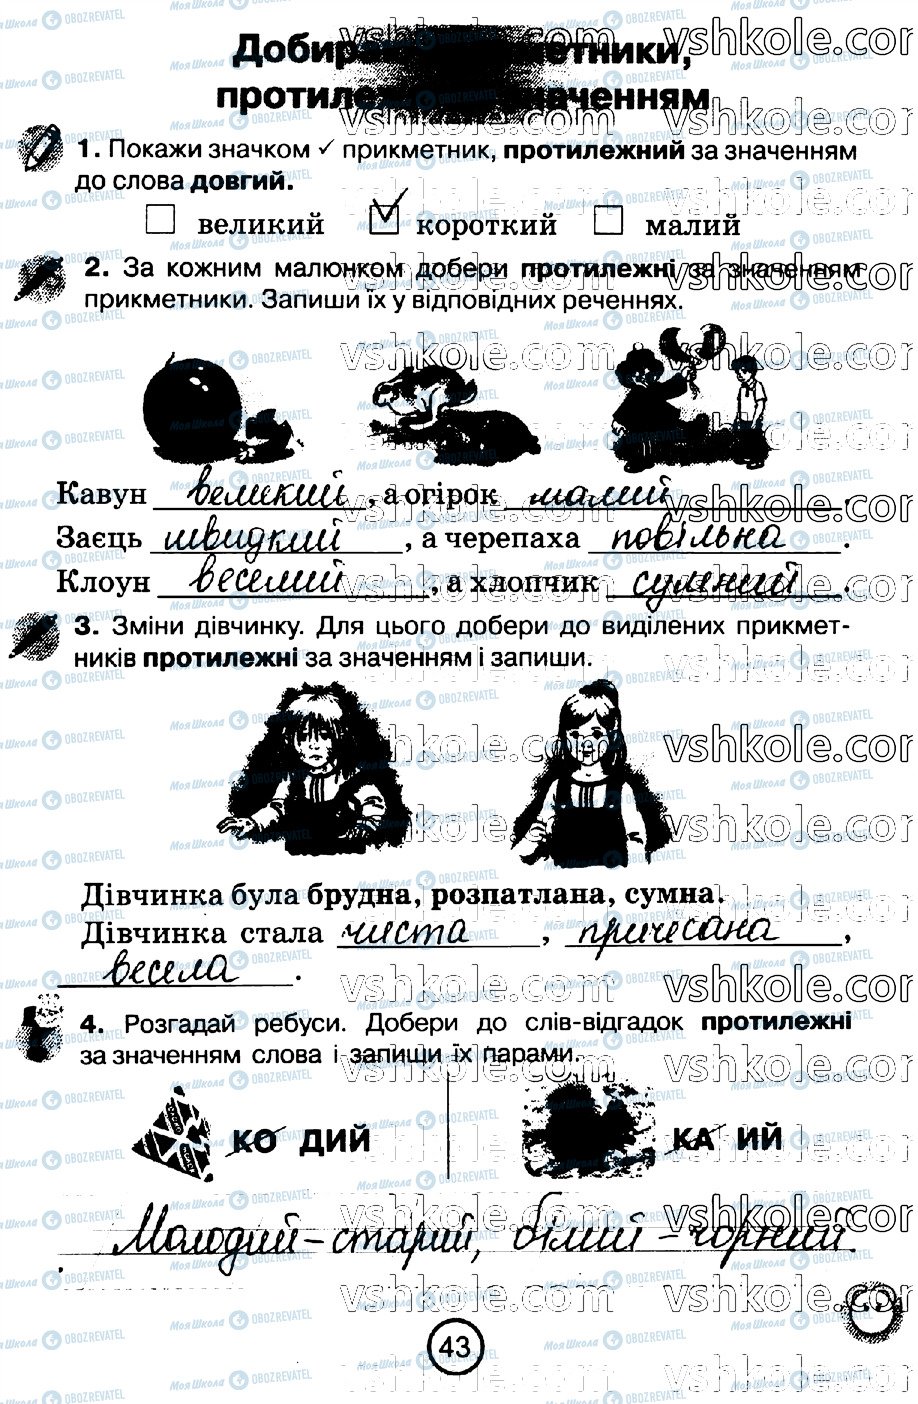 ГДЗ Укр мова 2 класс страница стр43